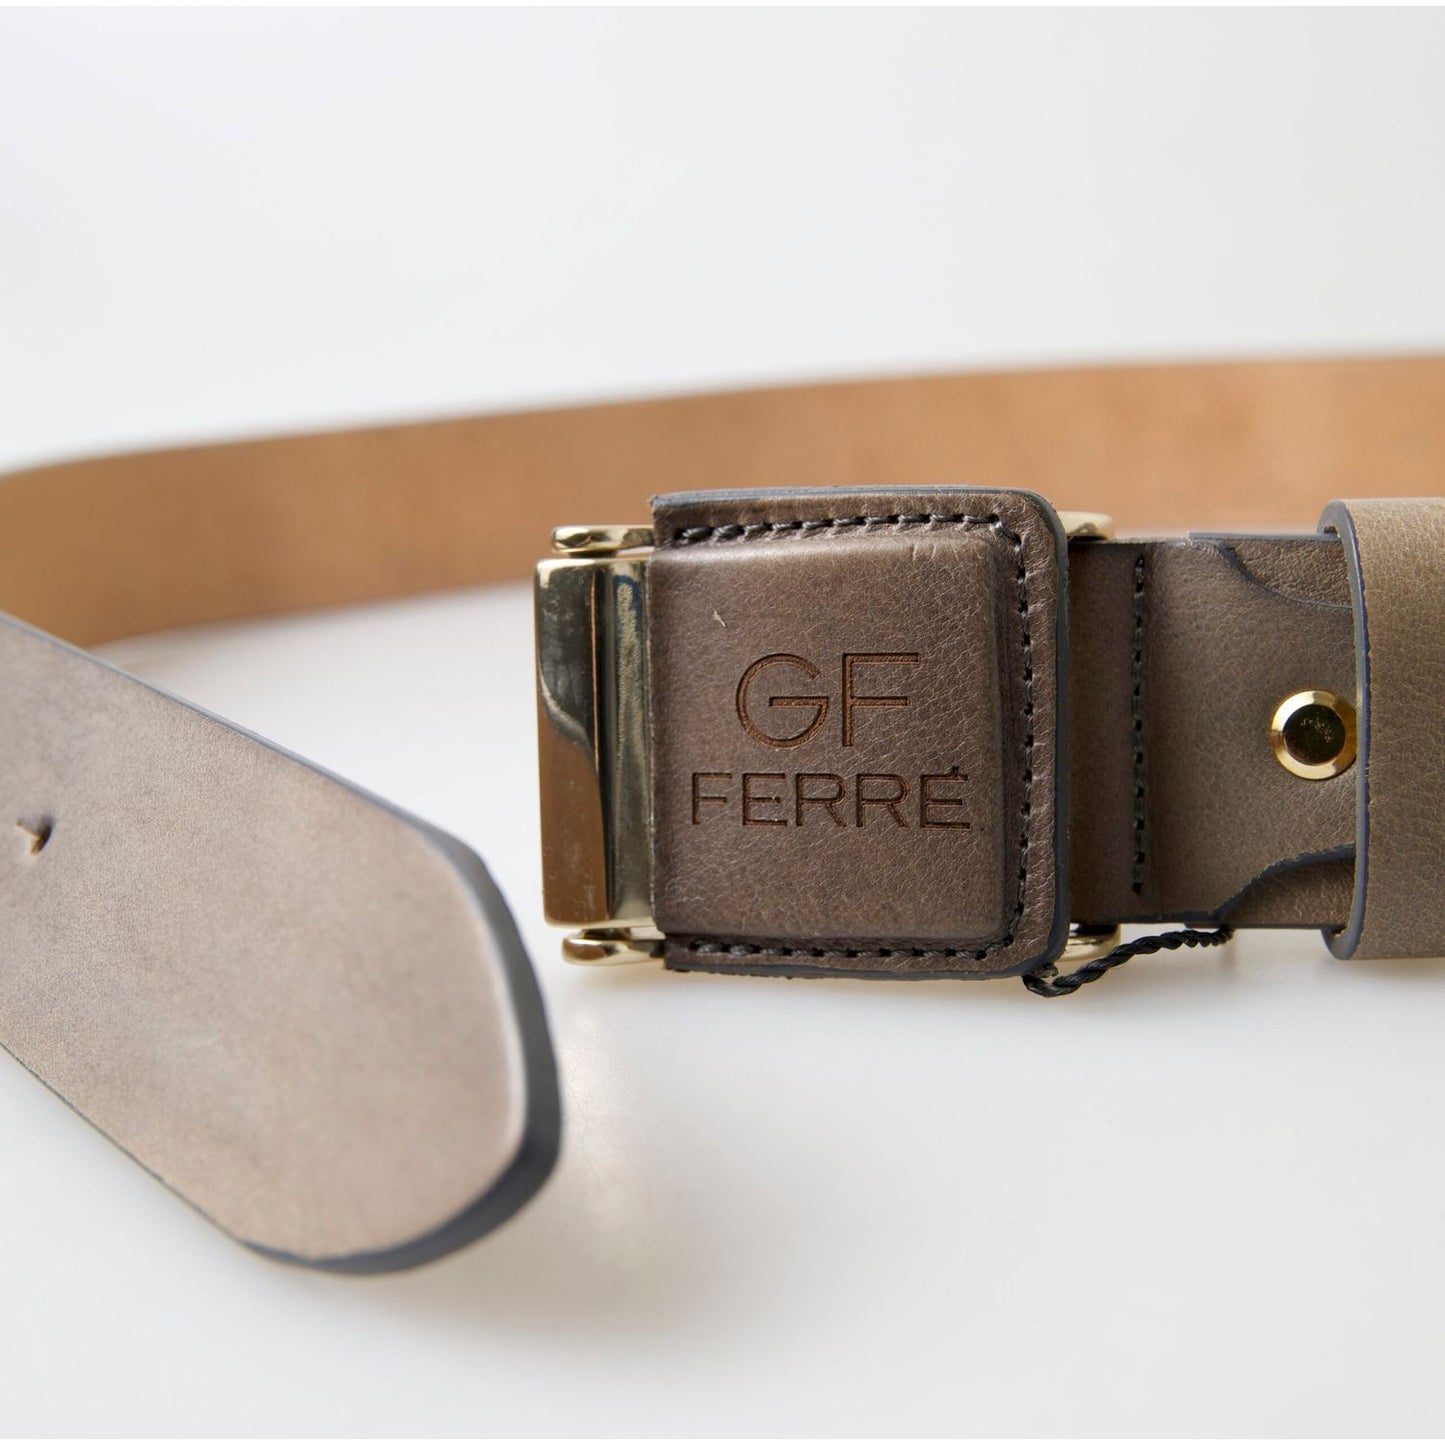 GF Ferre Elegant Leather Fashion Belt with Engraved Buckle brown-leather-fashion-logo-buckle-waist-belt 465A0848-copy-scaled-e81f2dd1-1c4.jpg